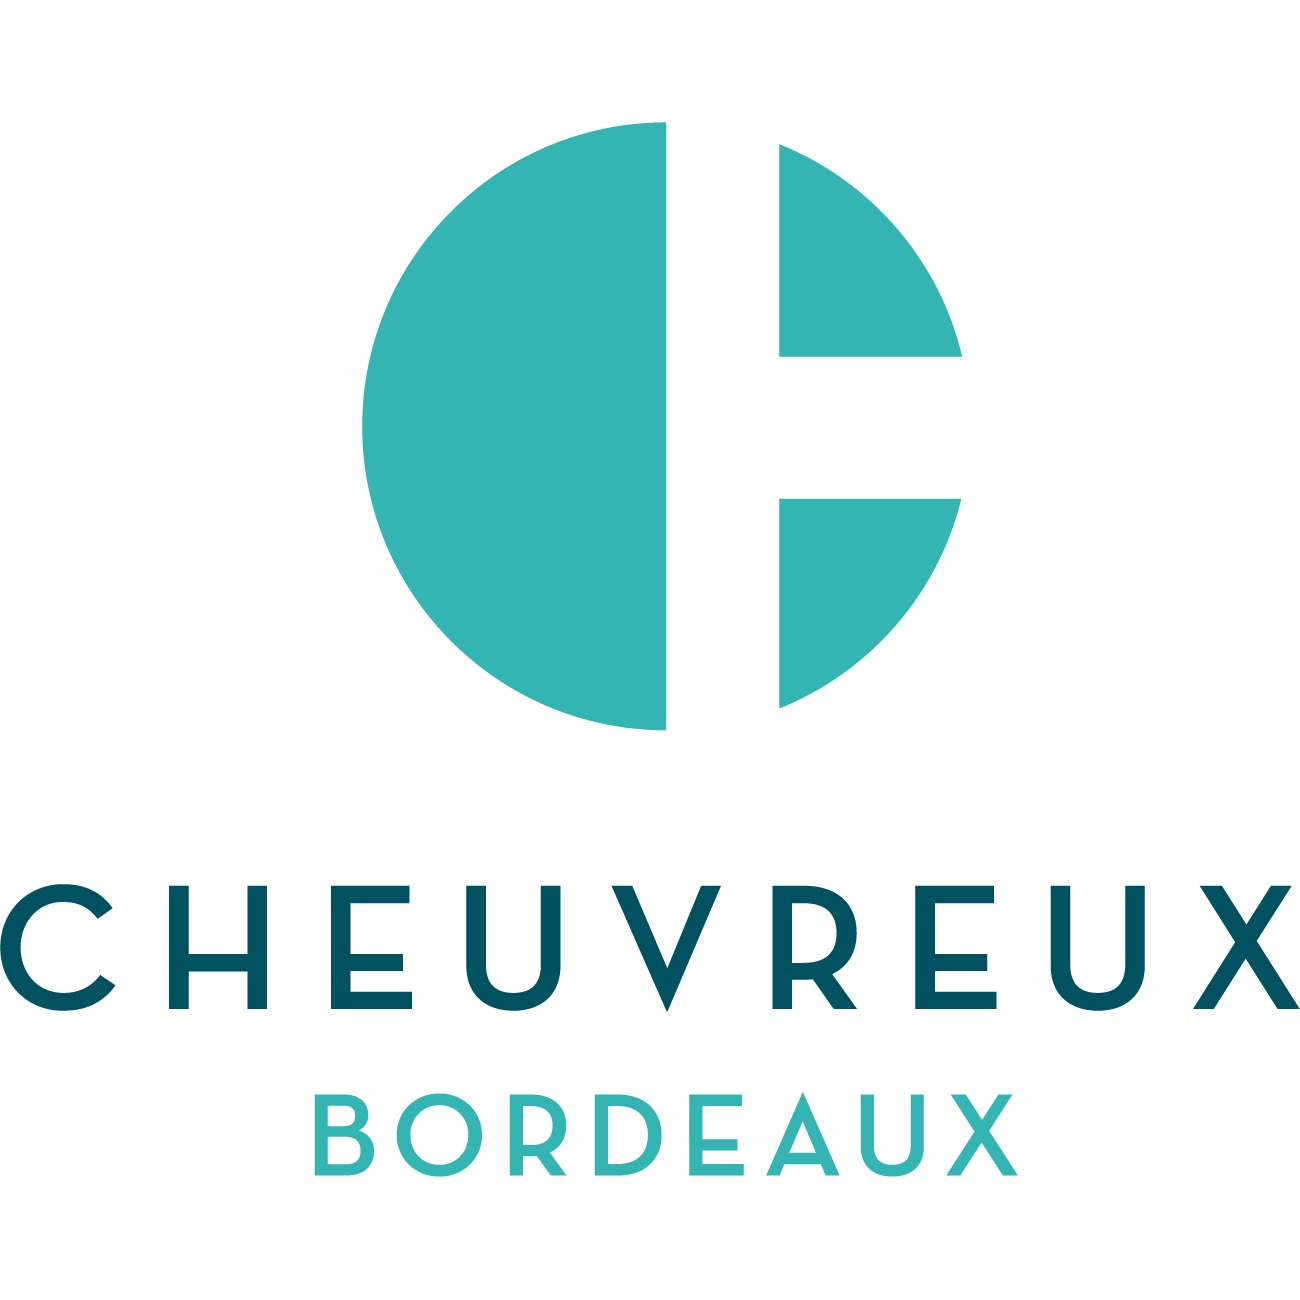 Cheuvreux Bordeaux